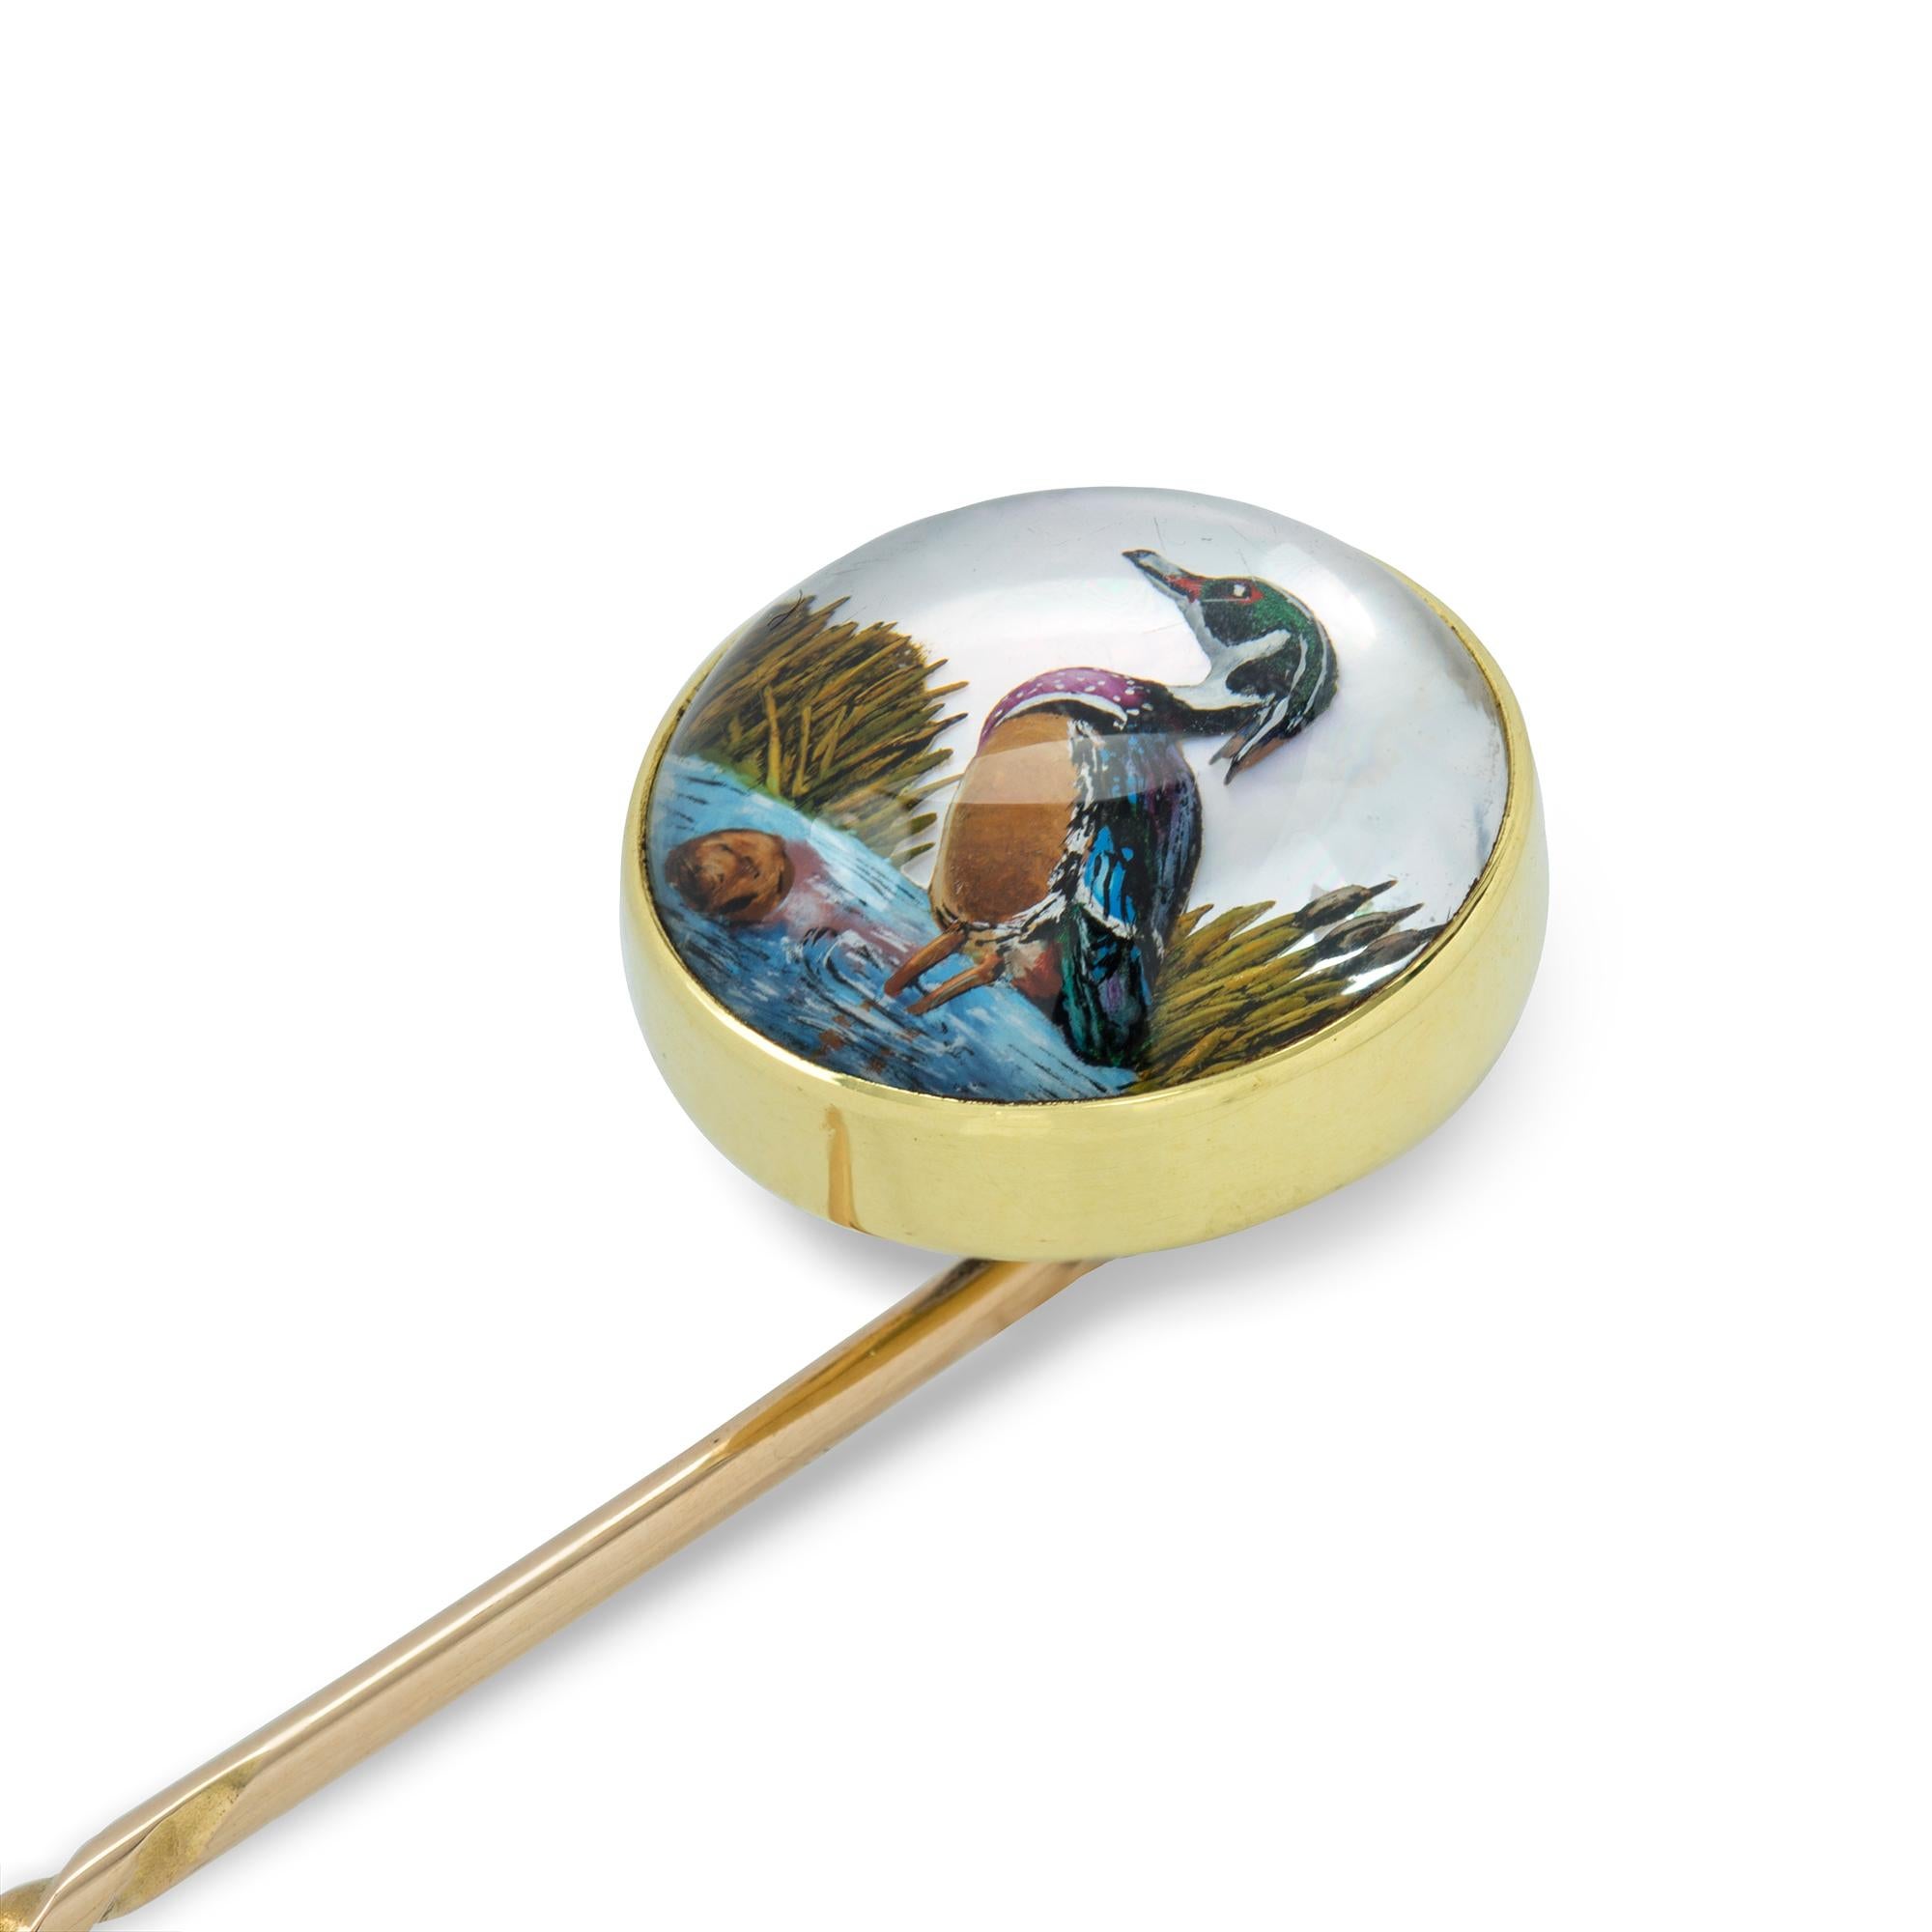 Une épingle ronde en cristal d'Essex, le cristal taillé en cabochon représentant un oiseau, serti sur une monture en or 18ct, à l'attache en or, vers 1900, la partie en bijou mesurant 1,4cm de diamètre, l'épingle mesurant 6,8cm, poids brut 5